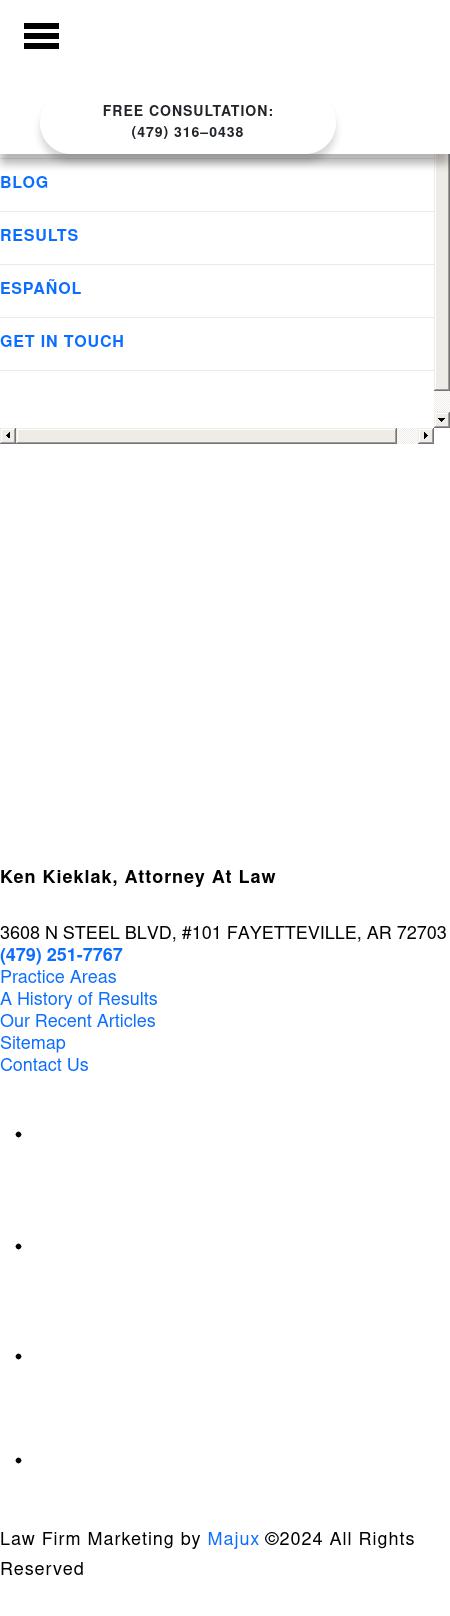 Ken Kieklak, Attorney at Law - Fayetteville AR Lawyers